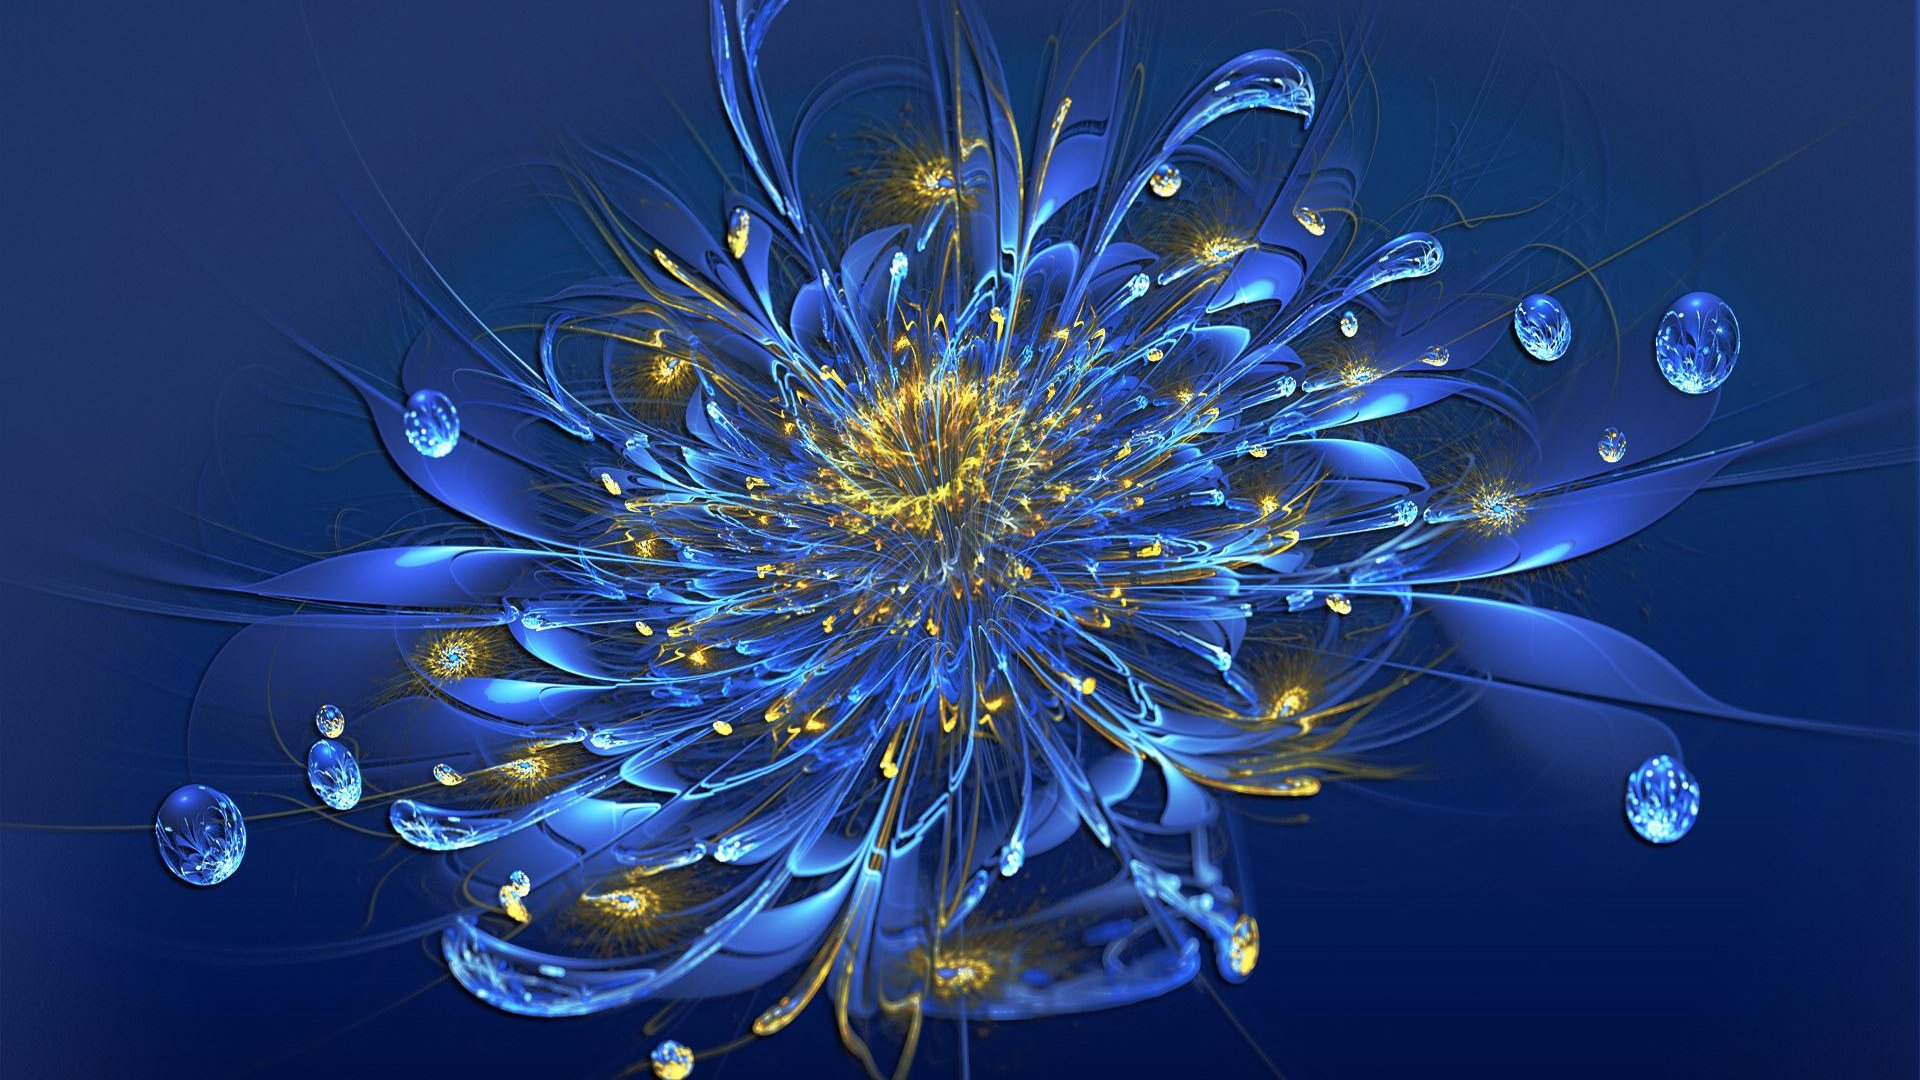 3D Grafik Design Wallpaper Hd : Flower Vector Designs 1080p Wallpapers